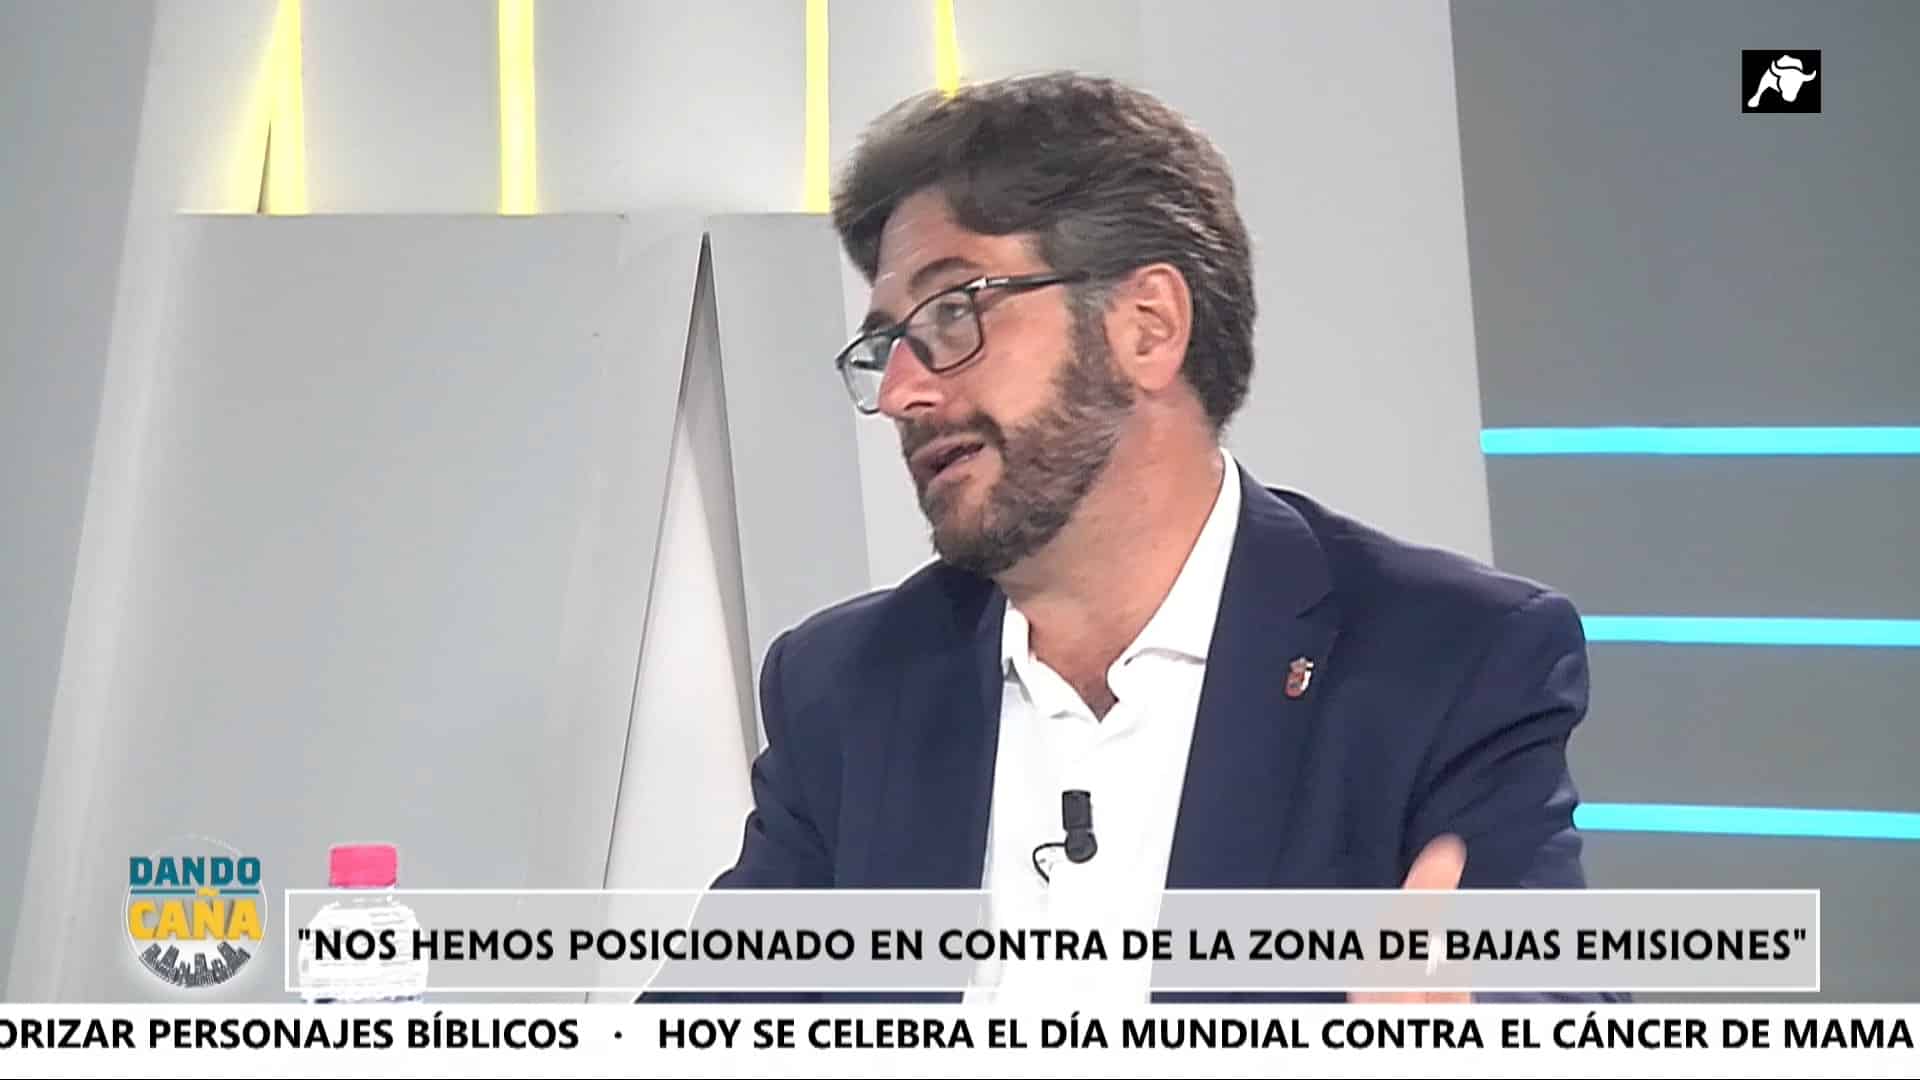 Entrevista alcalde de Pinto tras 100 días al frente: “Había más de 20 folios con facturas sin pagar”